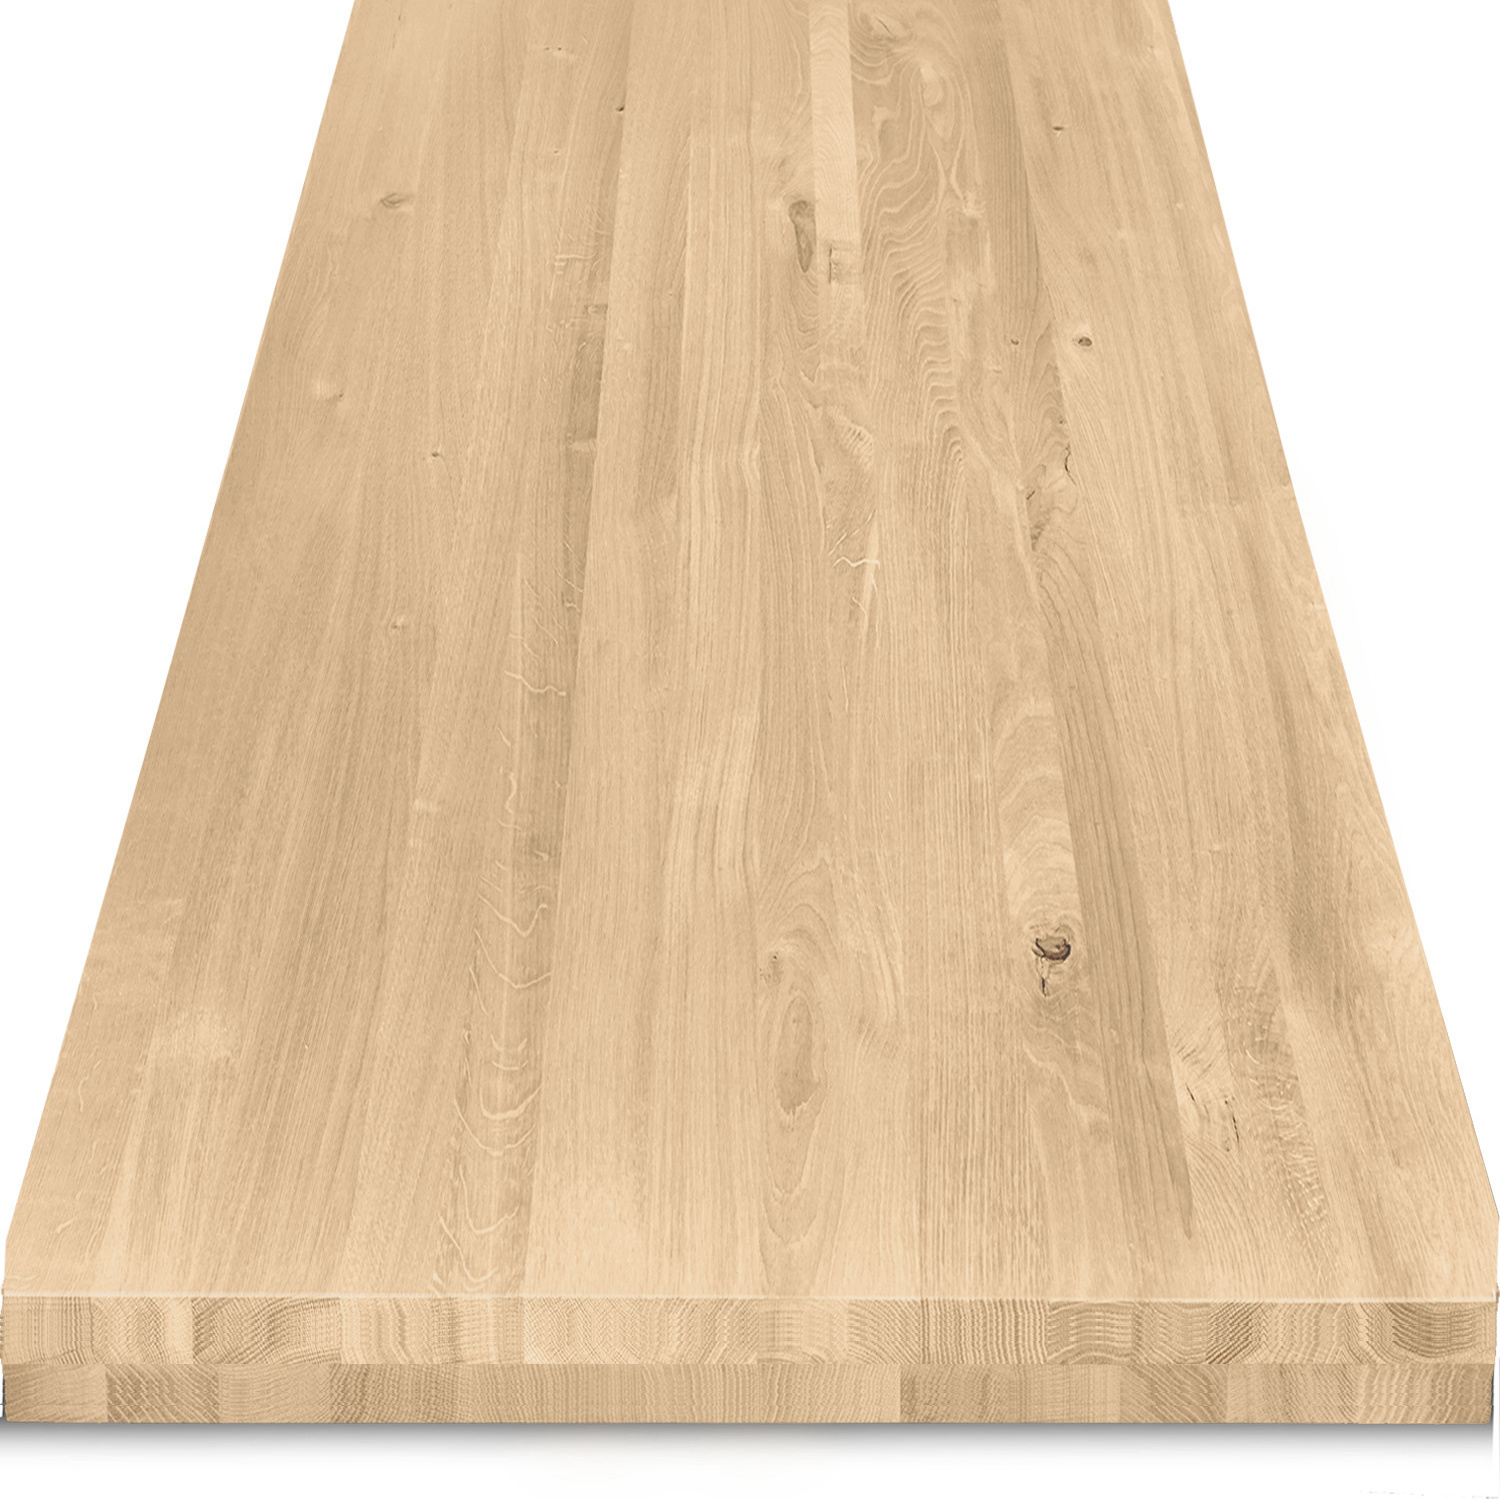  Tischplatte Eiche nach Maß - 8 cm dick (2-lagig) - Eichenholz rustikal - Eiche Tischplatte massiv - verleimt & künstlich getrocknet (HF 8-12%) - 50-120x50-350 cm